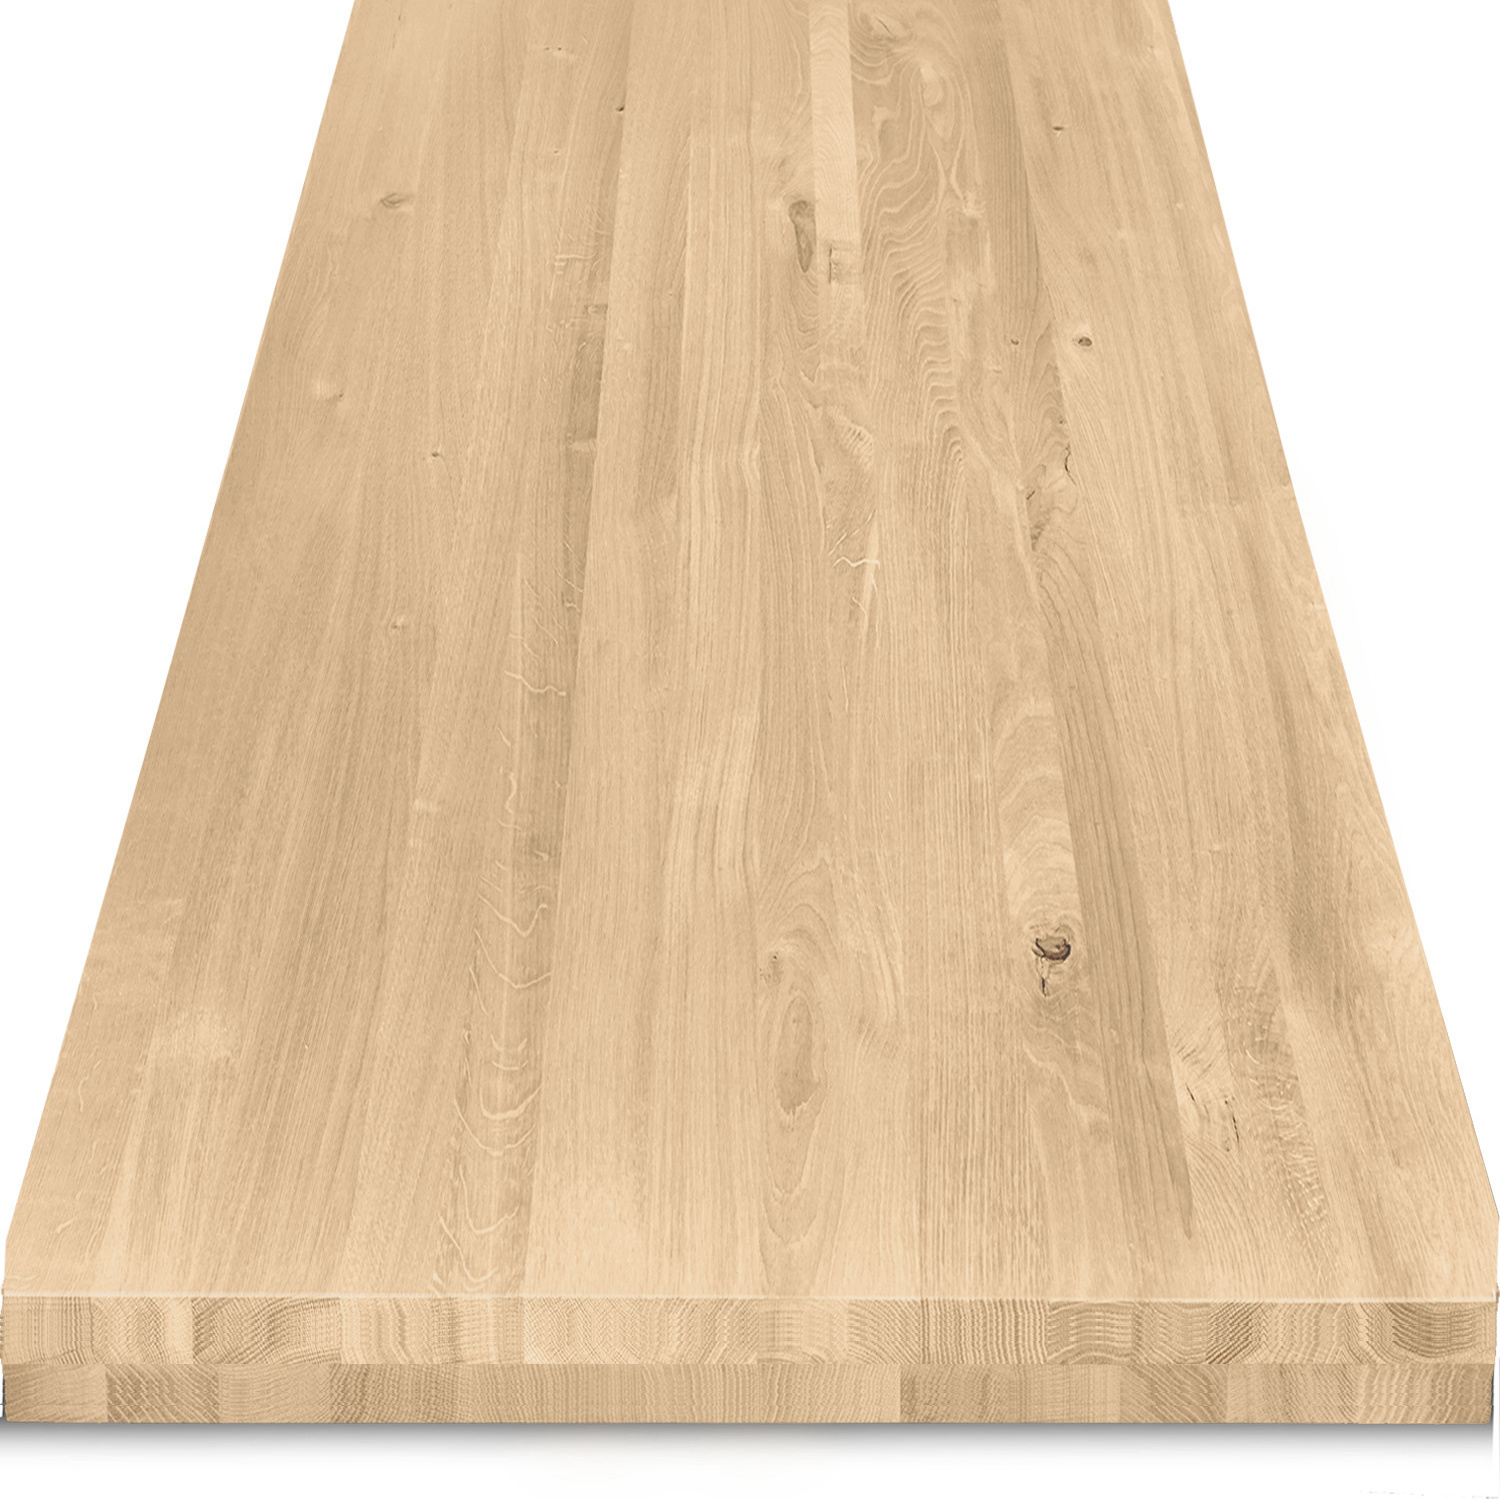  Tischplatte Eiche nach Maß - 8 cm dick (2-lagig) - Eichenholz rustikal - Eiche Tischplatte massiv - verleimt & künstlich getrocknet (HF 8-12%) - 50-120x50-350 cm